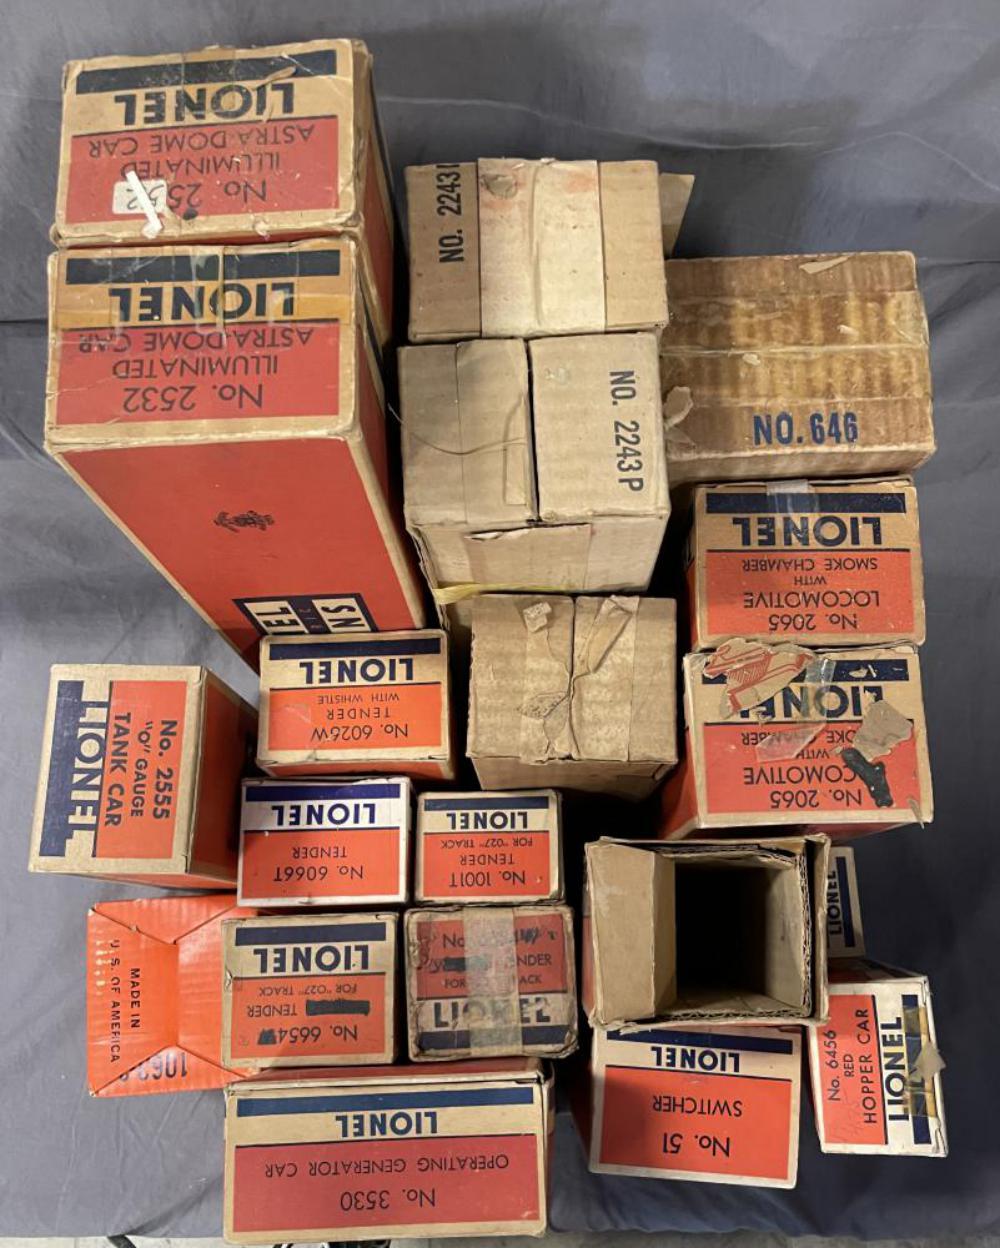 20 EMPTY Lionel Postwar Boxes